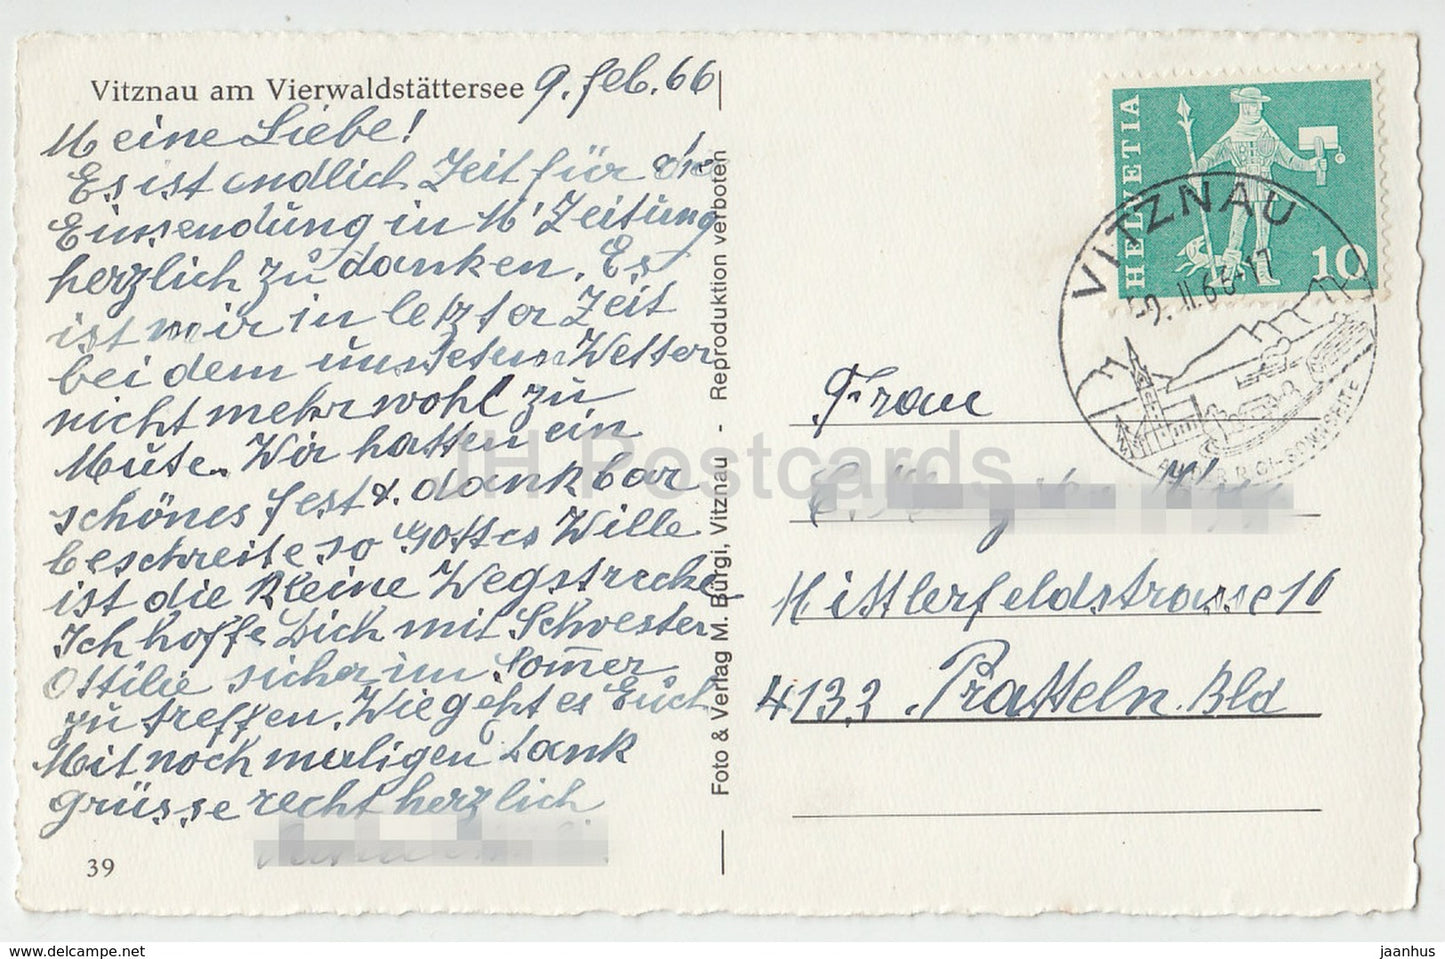 Vitznau am Vierwaldstattersee - Switzerland - 39 - 1966 - used